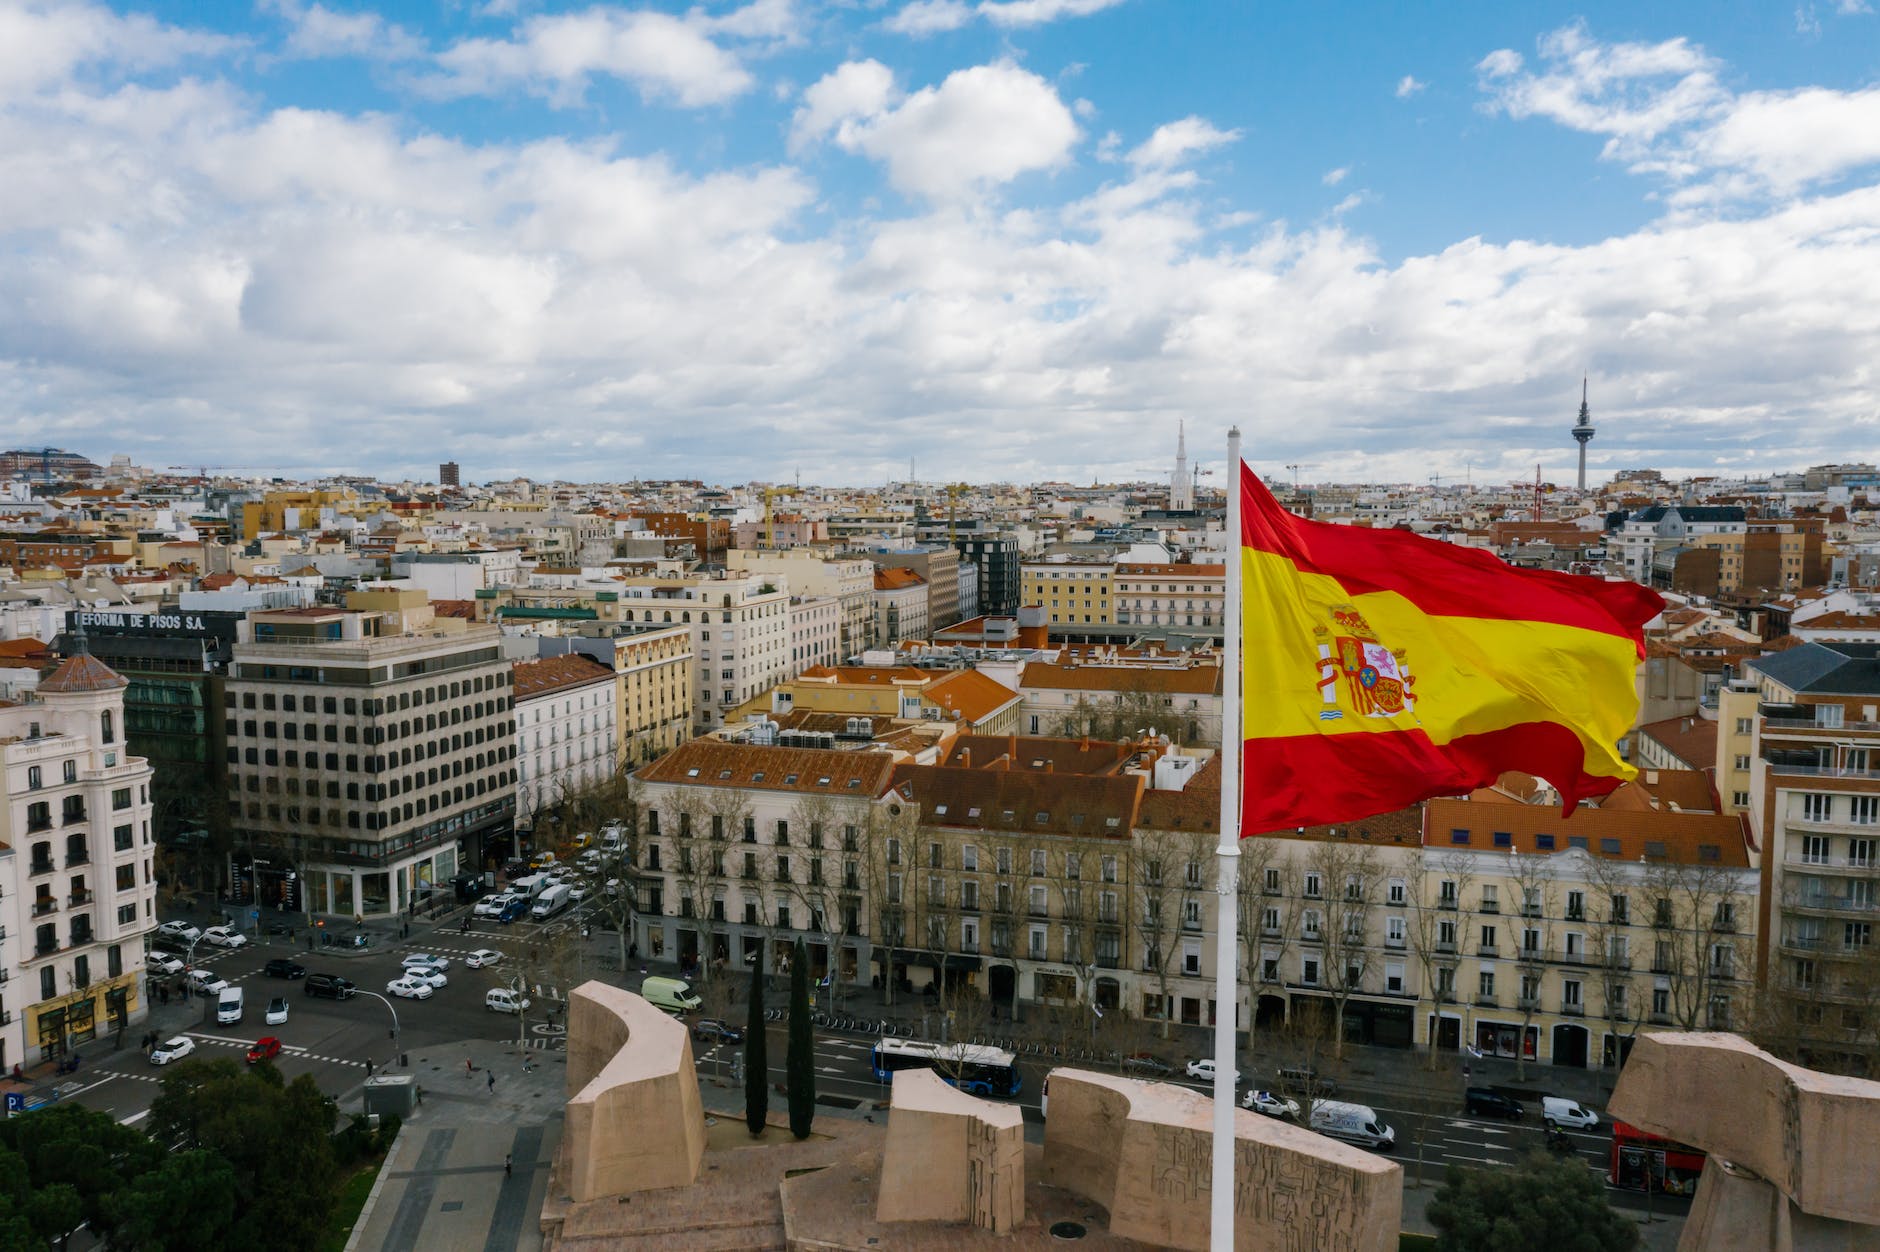 spansk nationalflag mod bybilledet